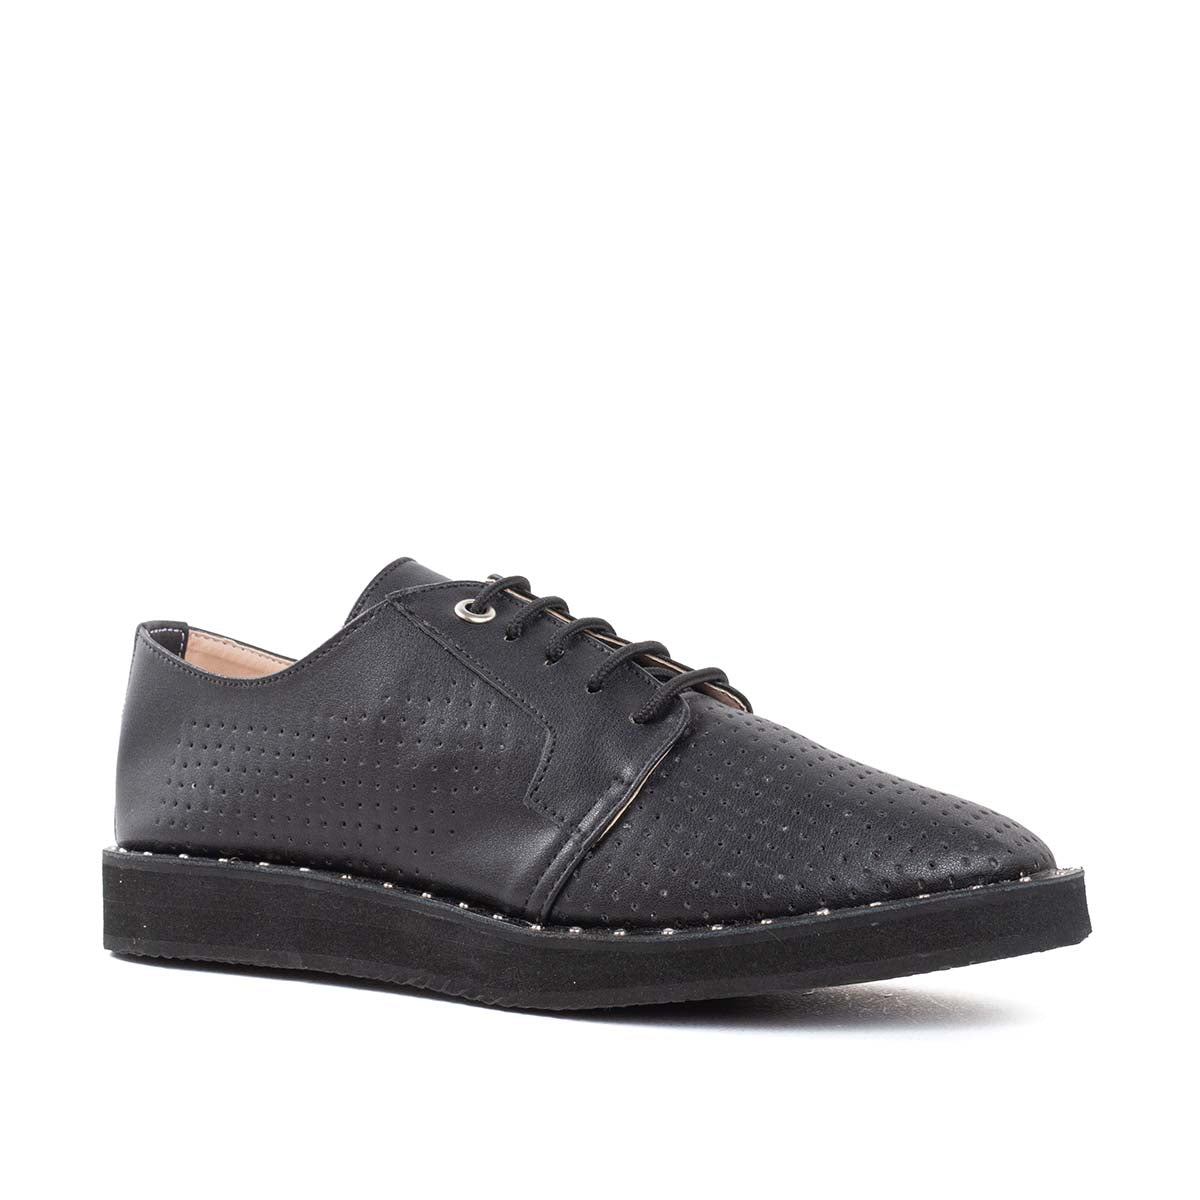 Zapato oxford negro con taches en suela y perforaciones